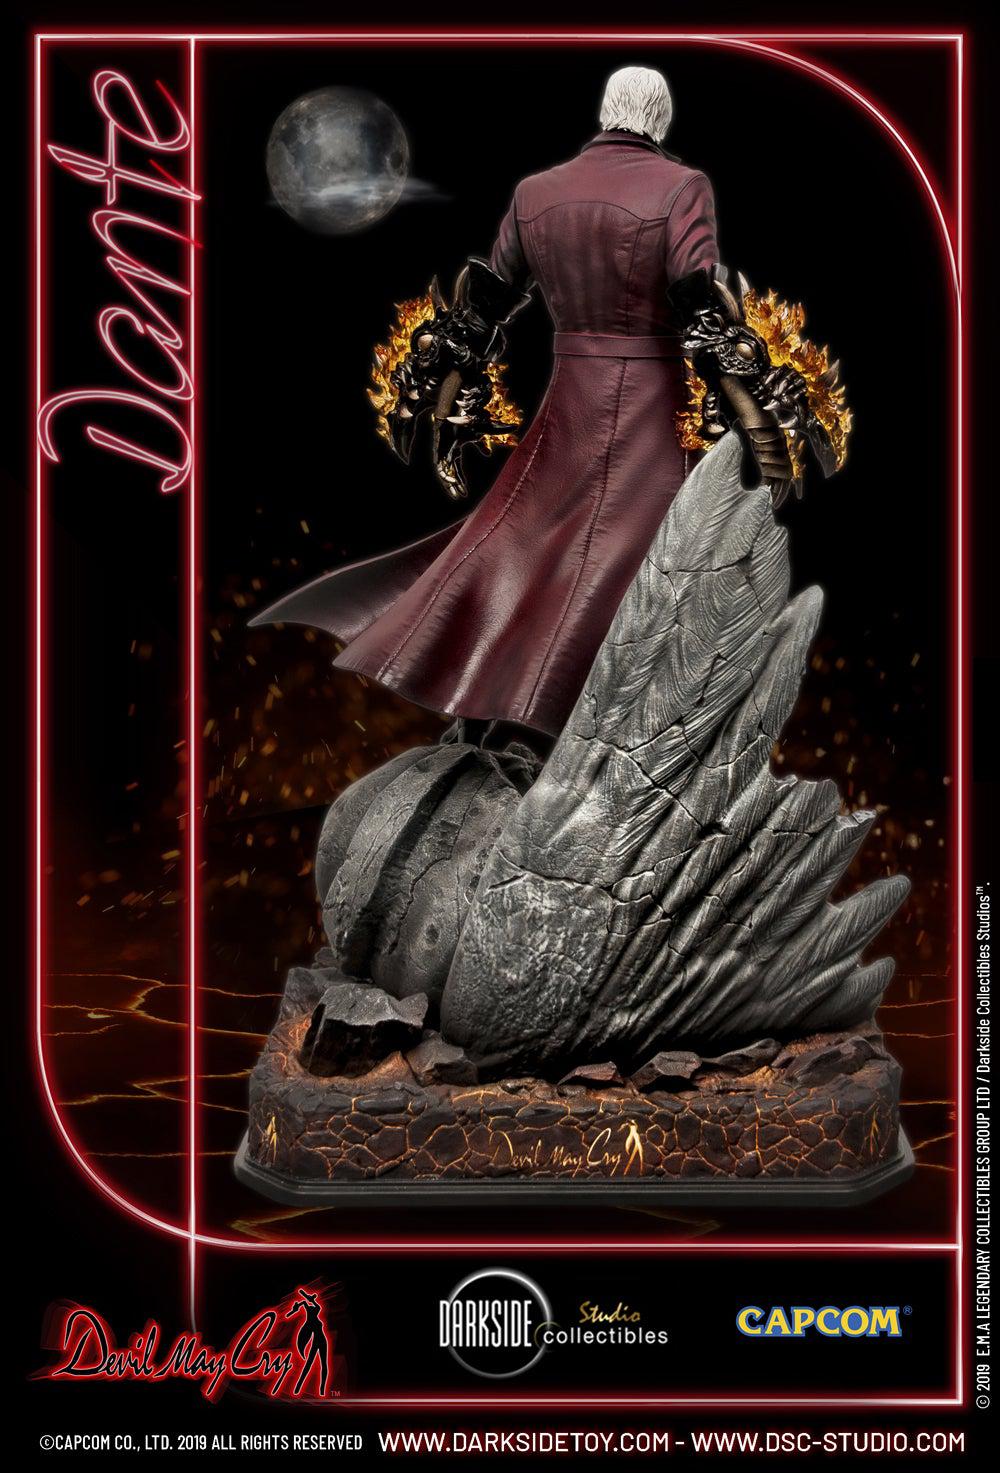 Dante Exclusive 1/4 Scale Premium Statue - Spec Fiction Shop